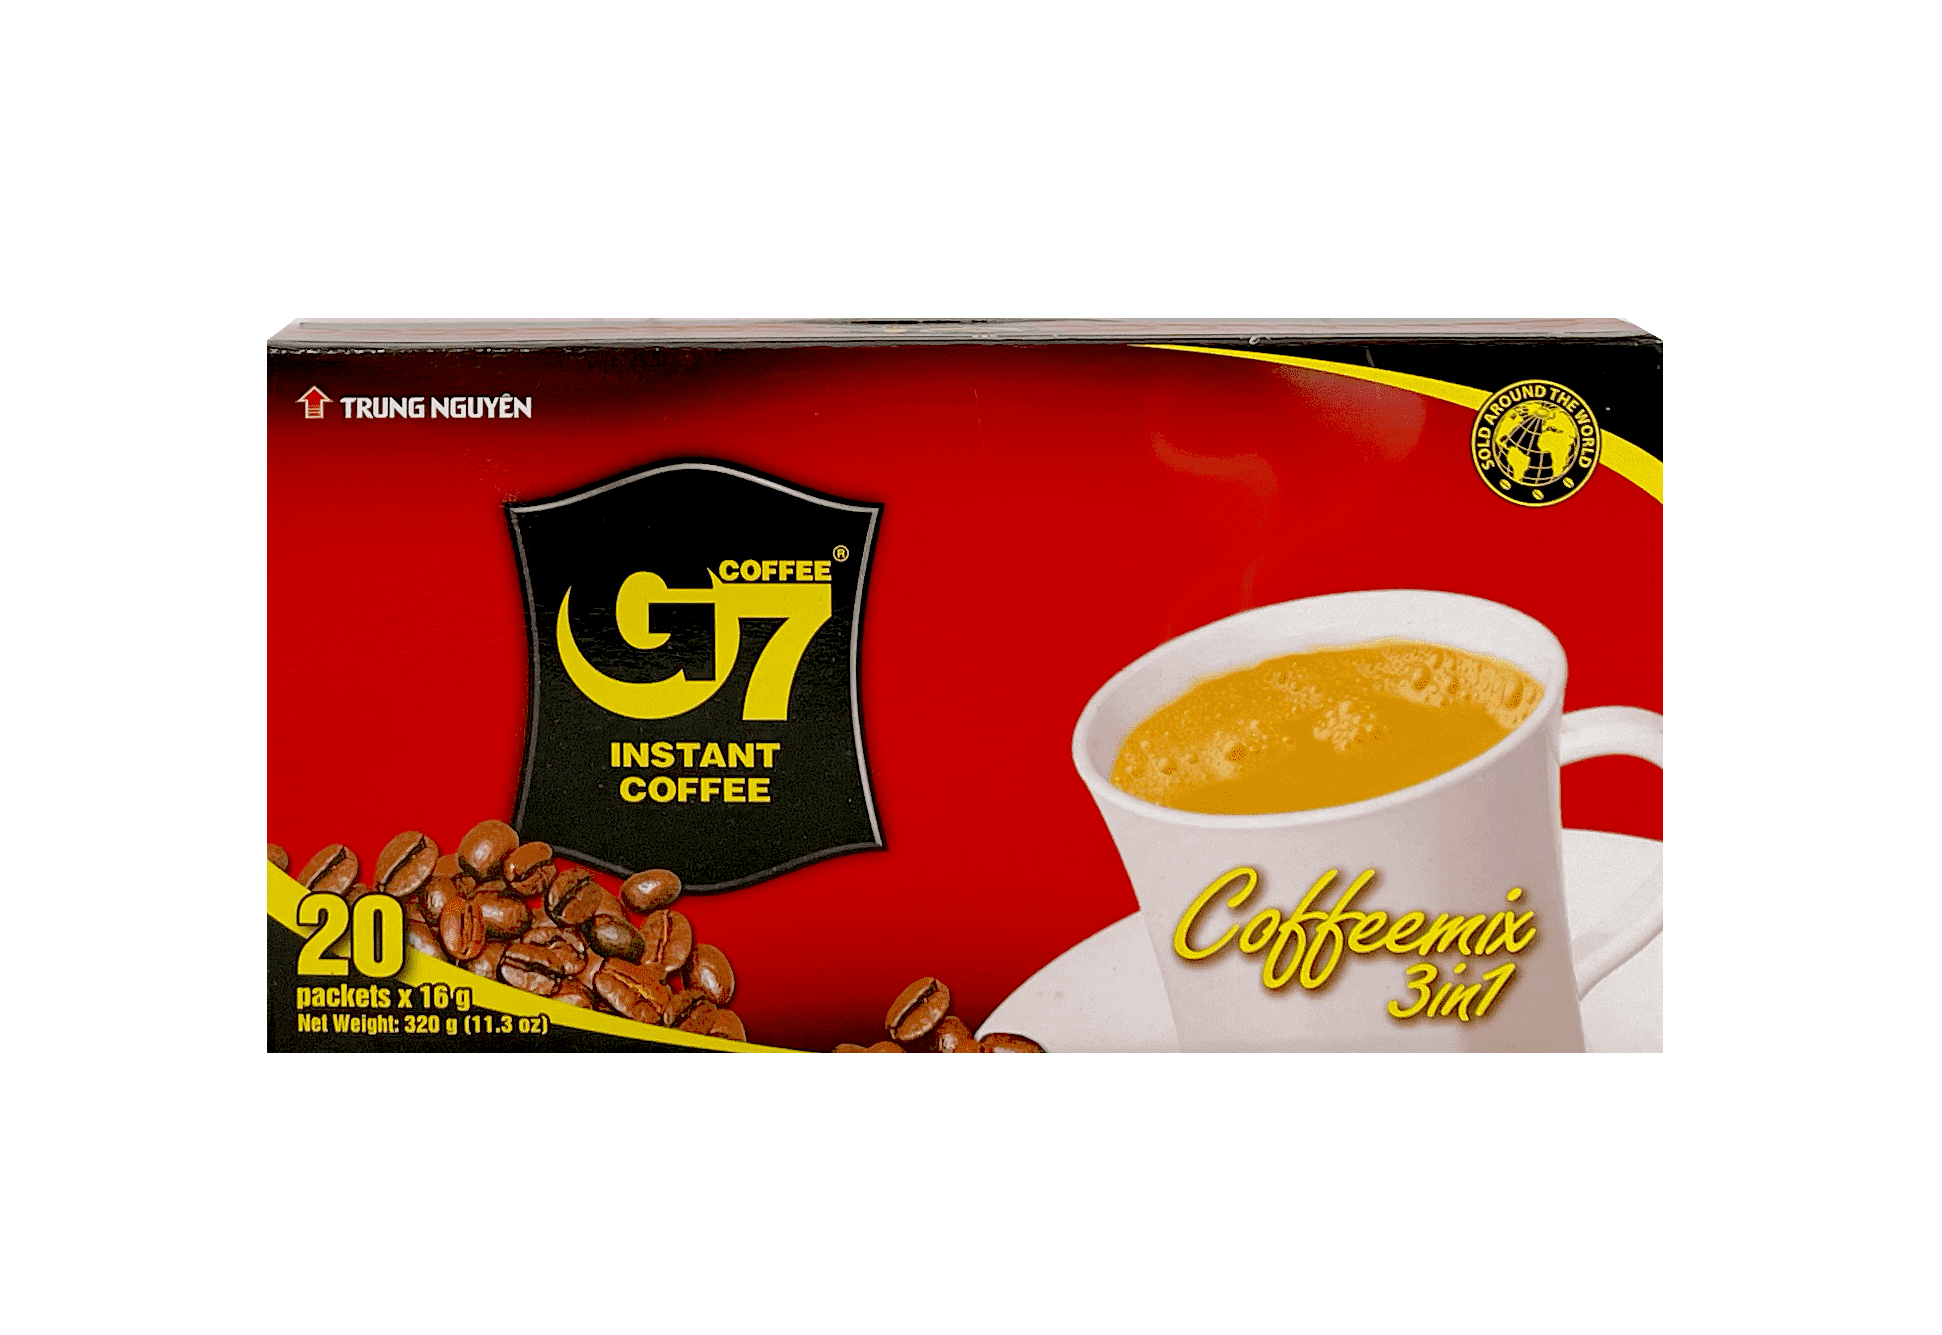 速溶咖啡 G7 3合1 咖啡 320g/盒 Trung Nguyen 越南